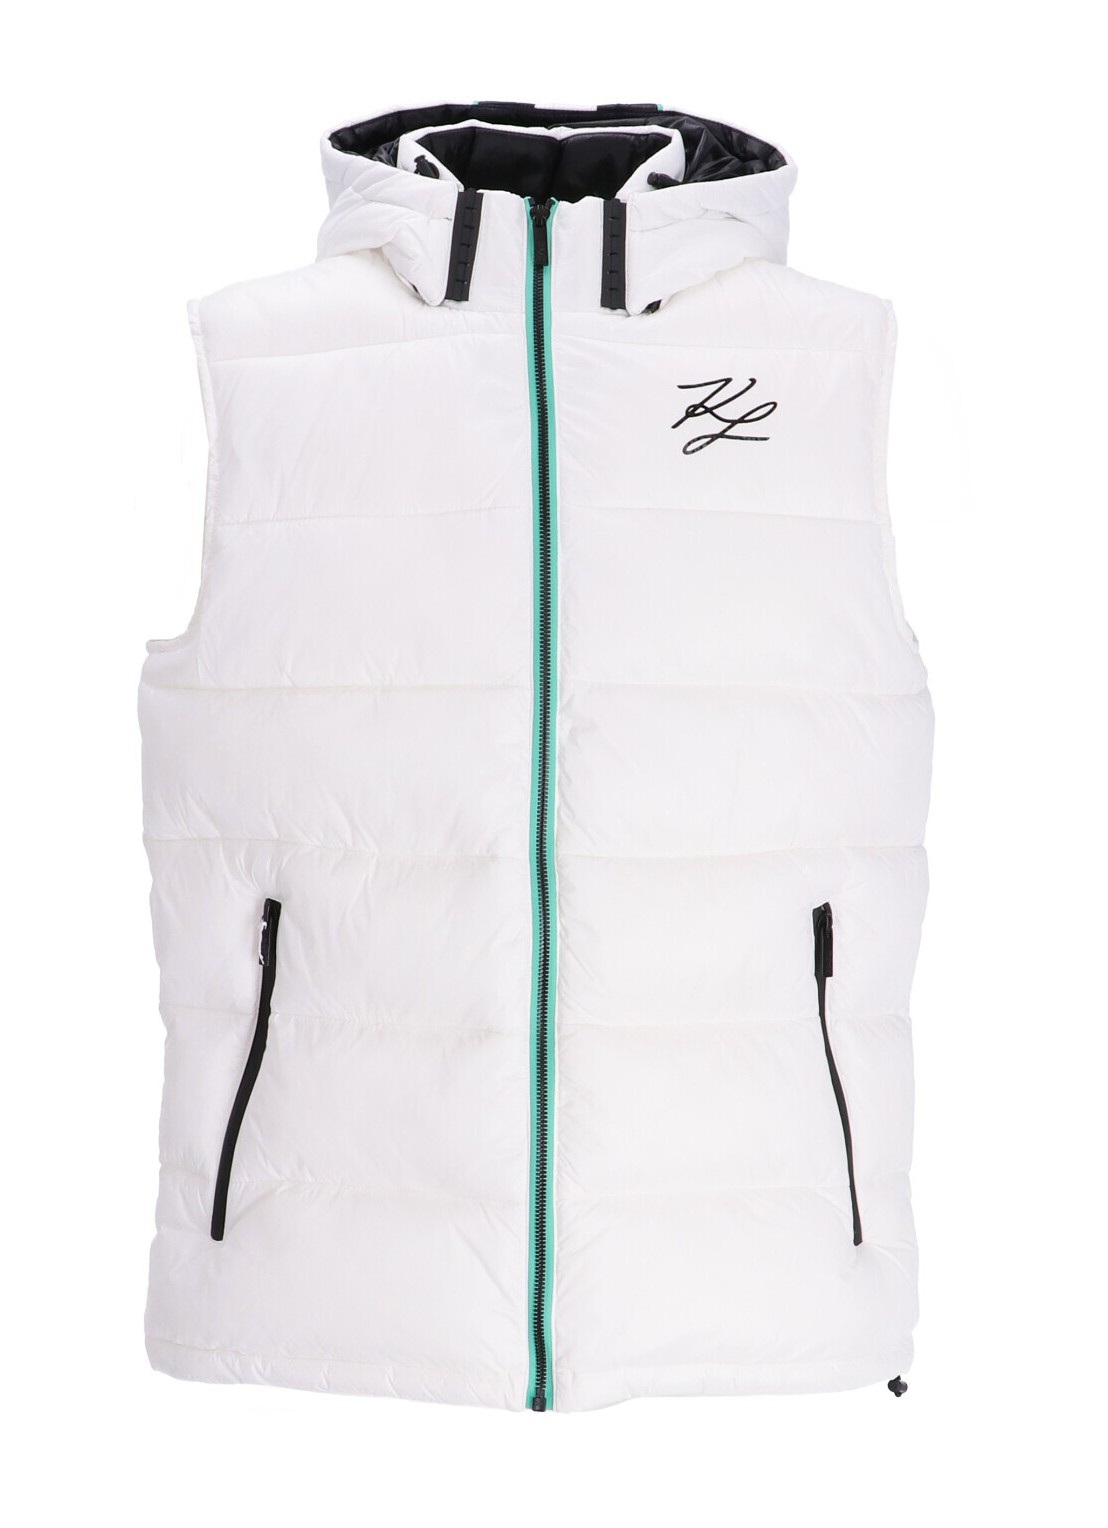 Outerwear karl lagerfeld outerwear man hooded vest 505091541590 10 talla blanco
 